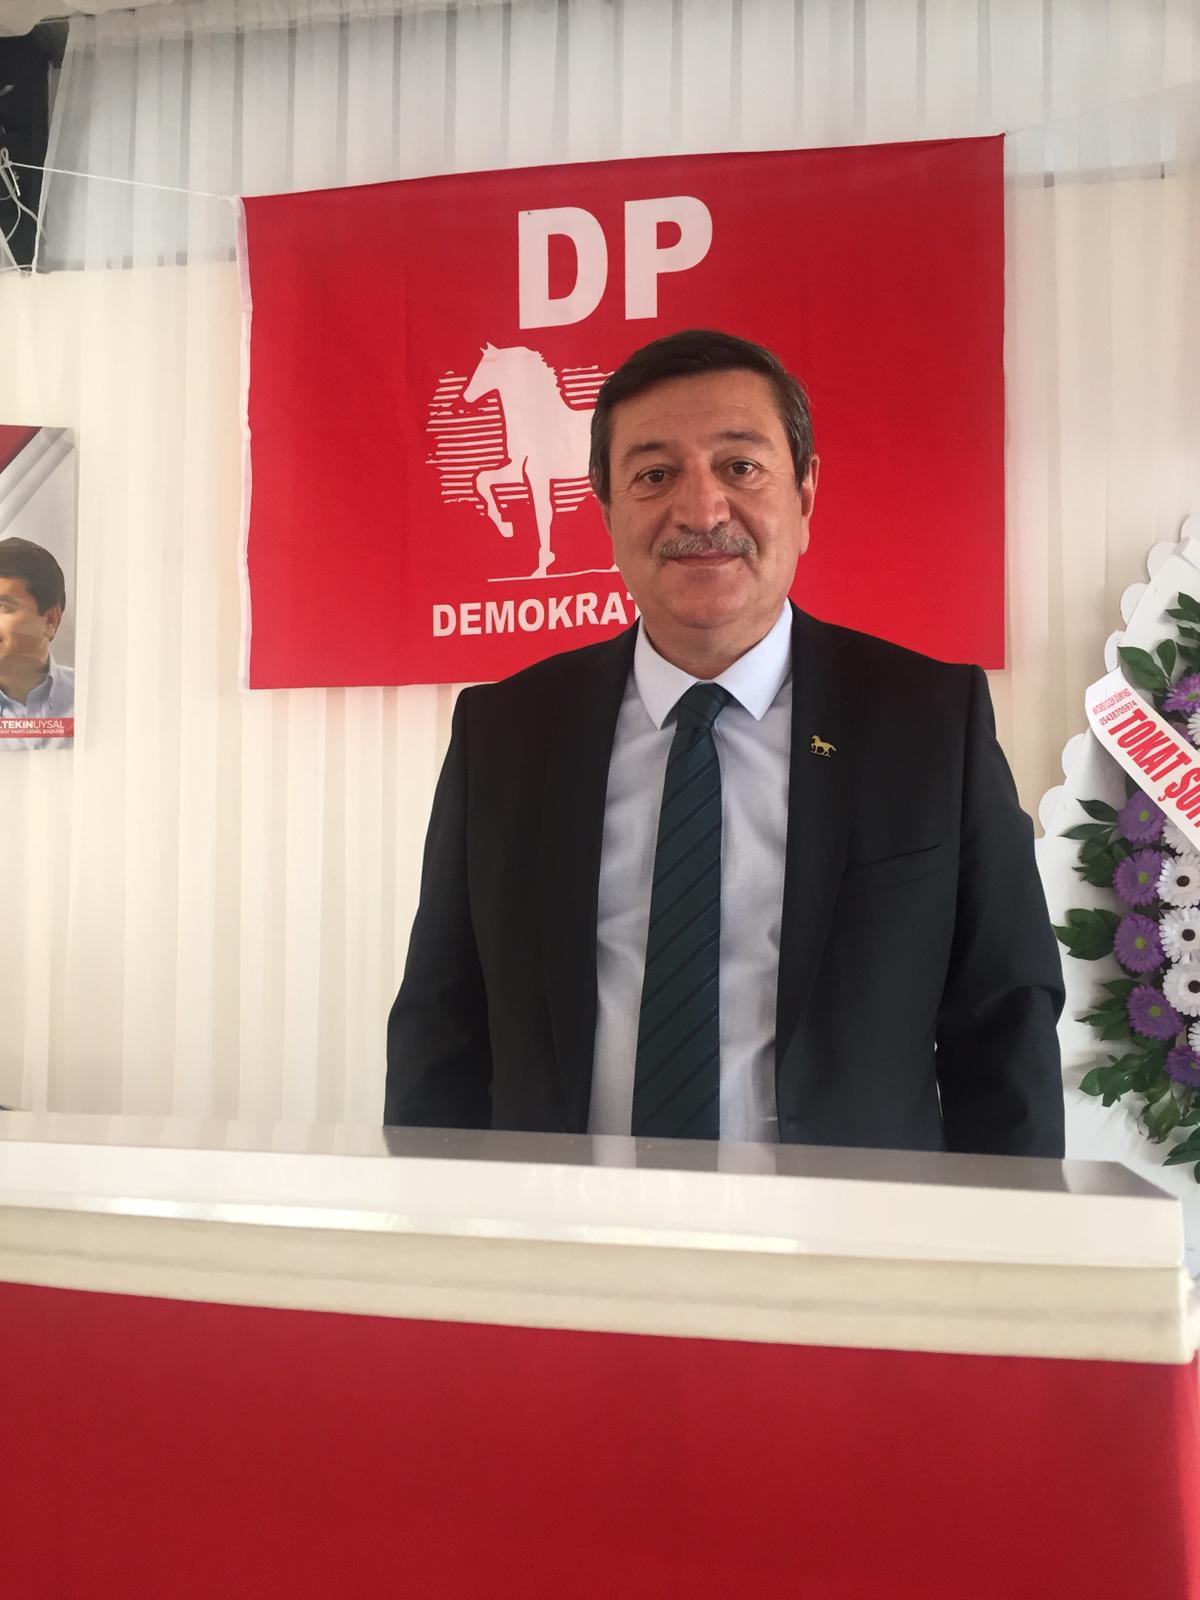 Demokrat Parti (DP) Sivas İl Başkanı Numan Akay, bir kez daha küçük esnaf için çağrıda bulundu ve  “Küçük esnafa destek ol Türkiye. Türkiye’de esnaflarımız entübe olmuştur, nefes alamaz haldedir.”